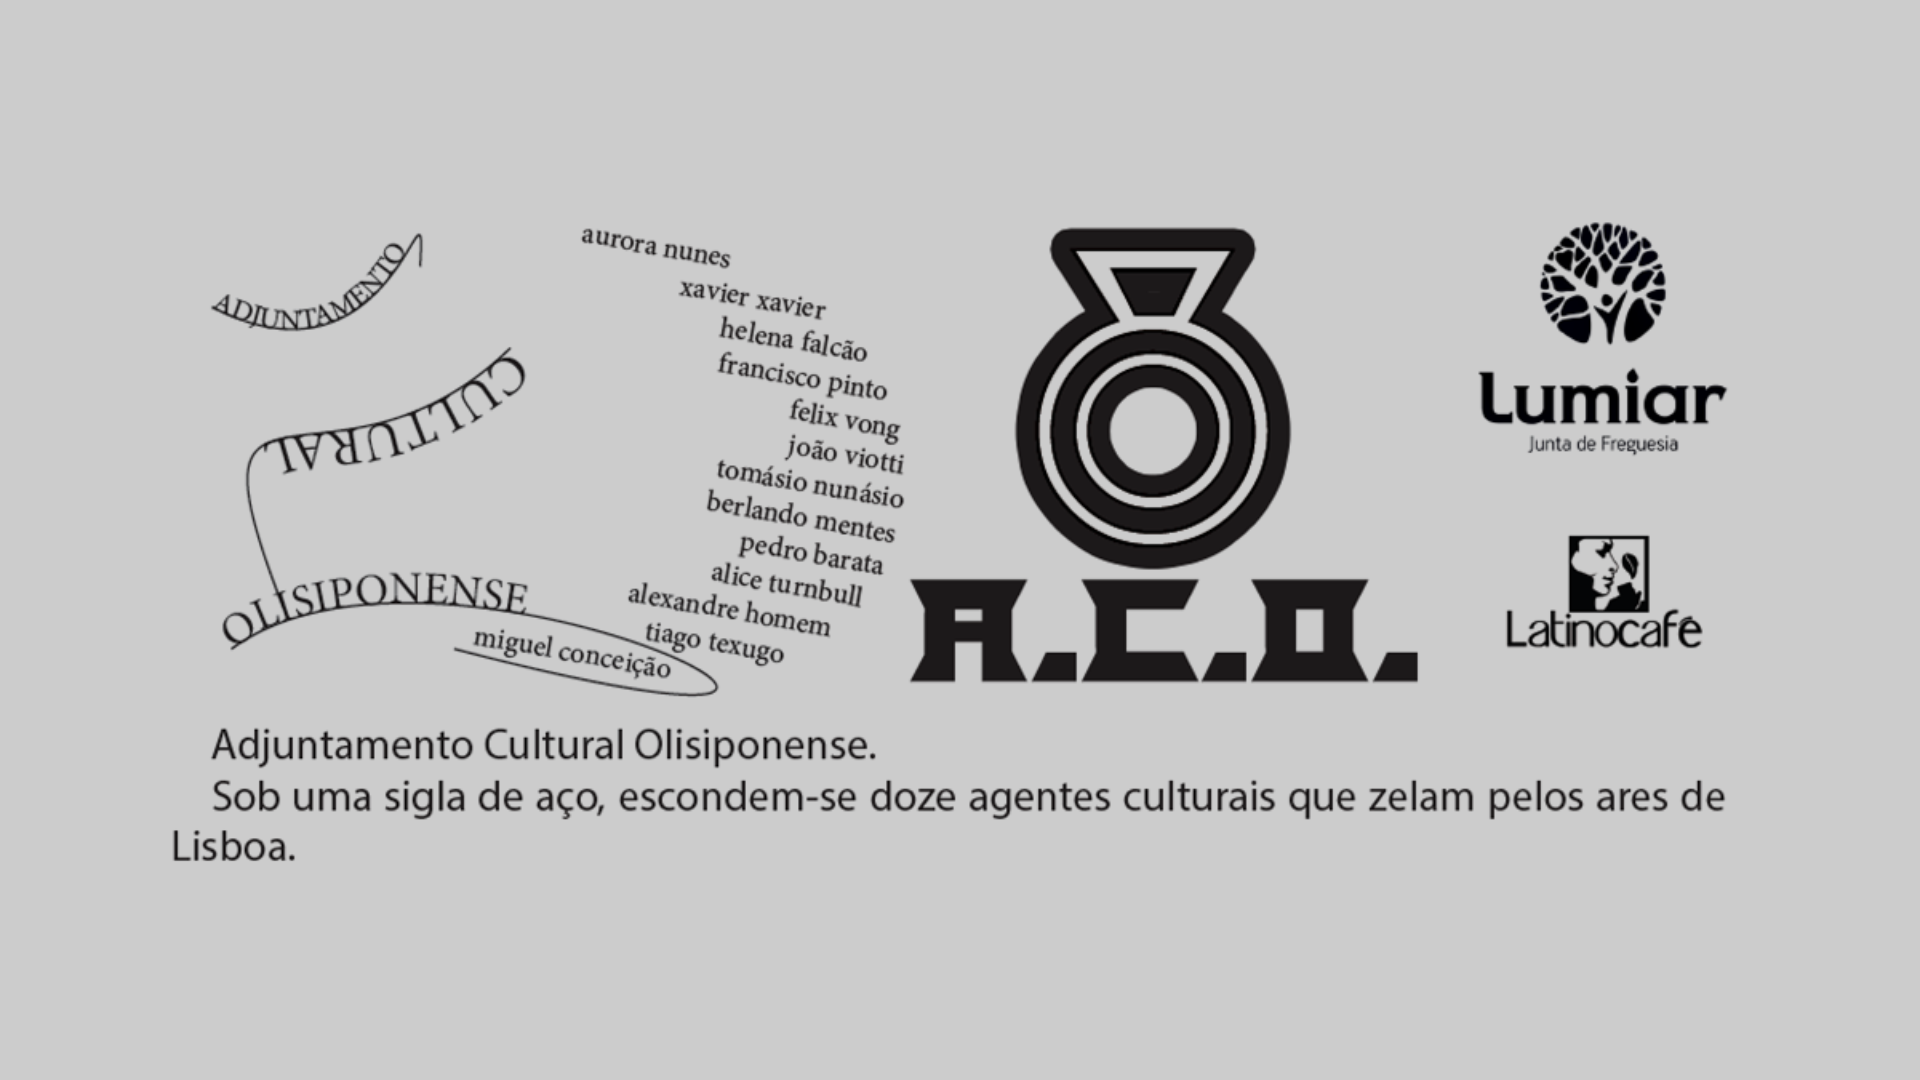 Exposição ‘Adjuntamento Cultural Olisiponense’, com curadoria de João Viotti na Galeria Liminare até 1 de Julho